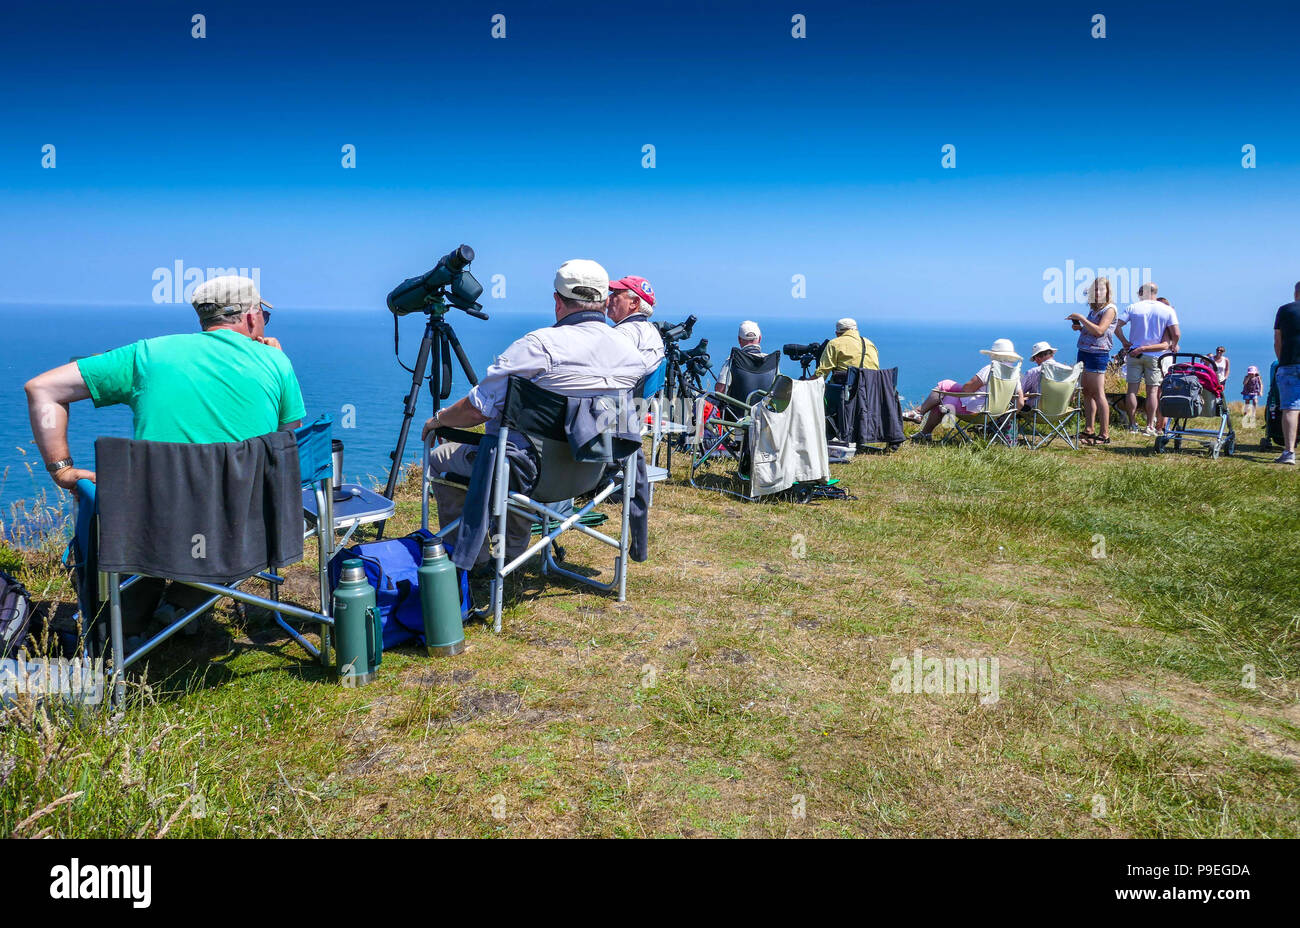 Il birdwatching con telescopi e clima estivo a Flamborough Head, facile Yorkshire Foto Stock